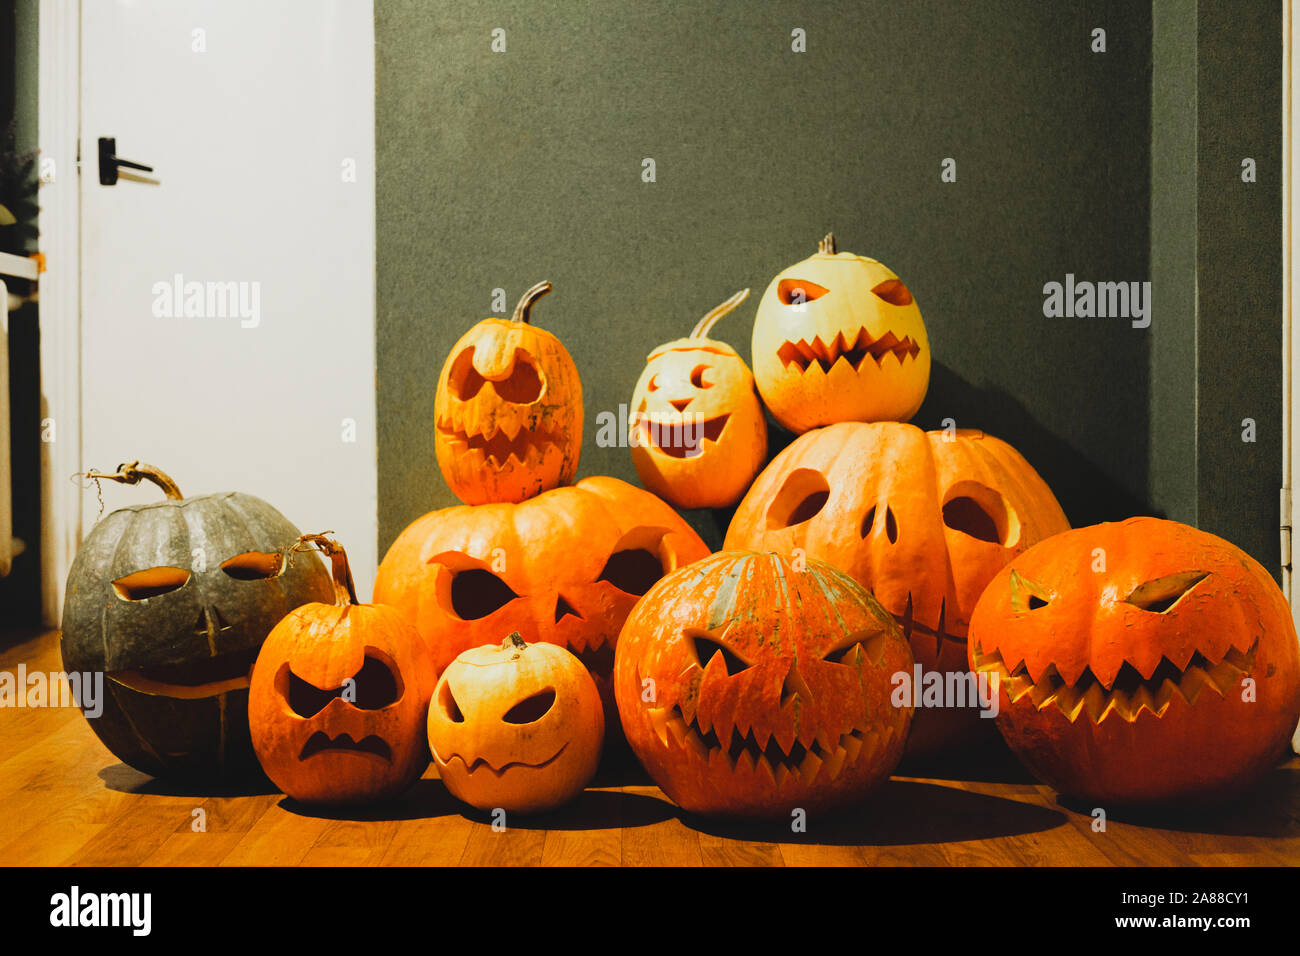 Halloween pumpkins sculpté sur fond vert. Halloween concept : tas de Jack O'lantern citrouille avec visages effrayant Banque D'Images